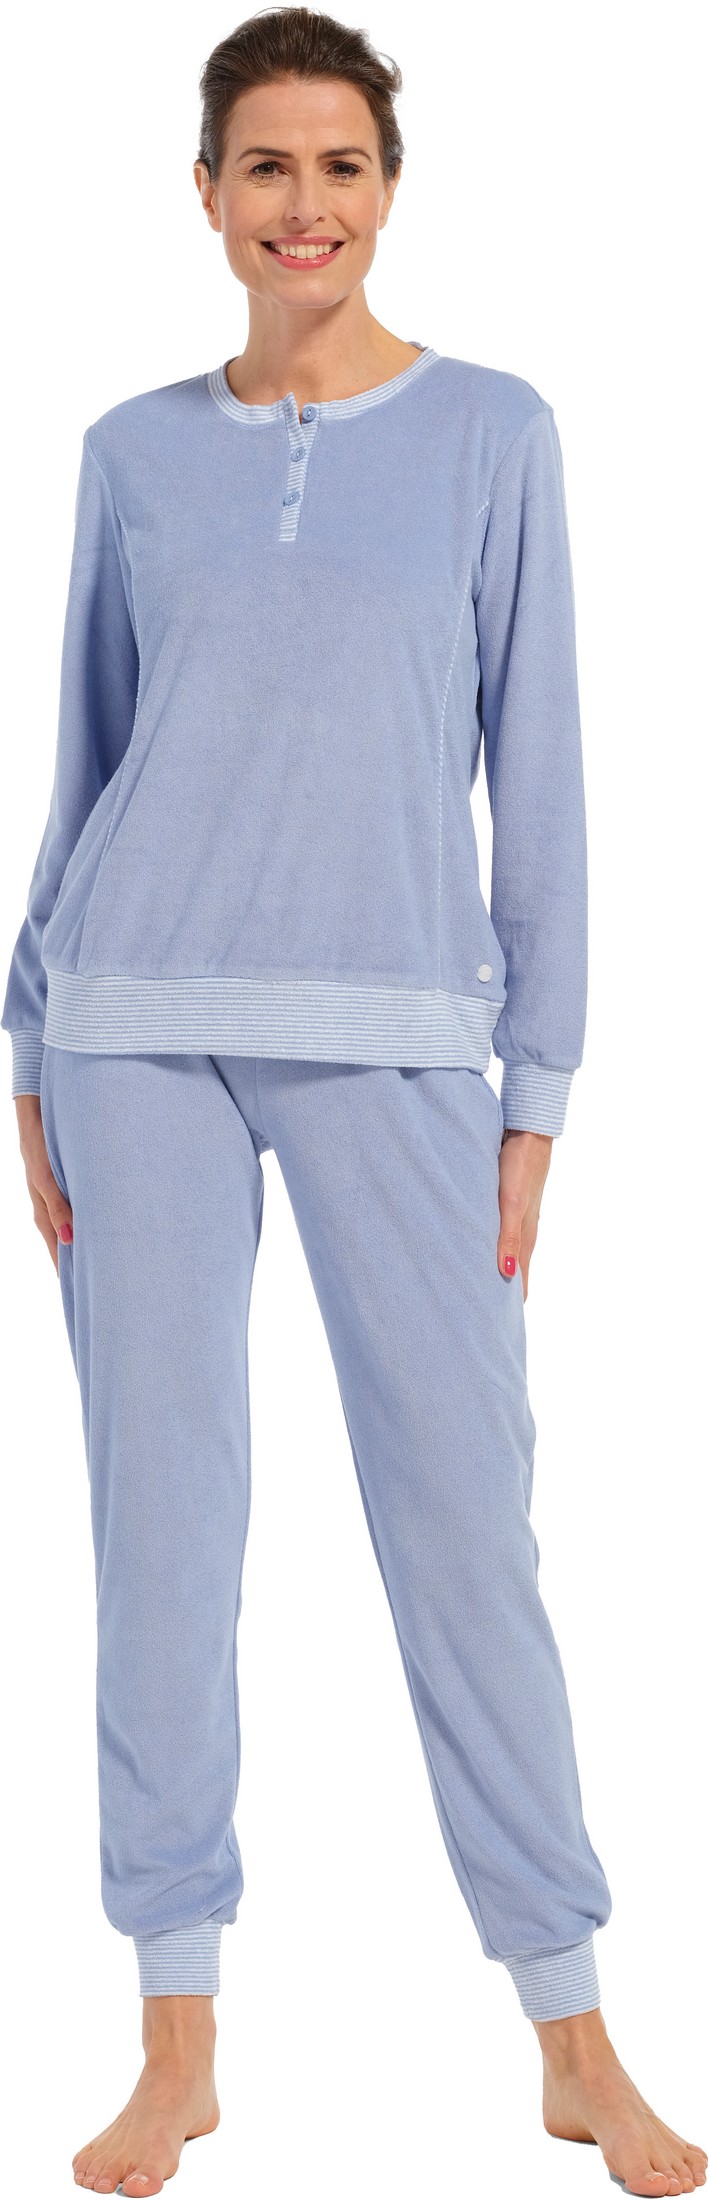 Pastunette dames badstof pyjama 20232-174-4 - Blauw - 46